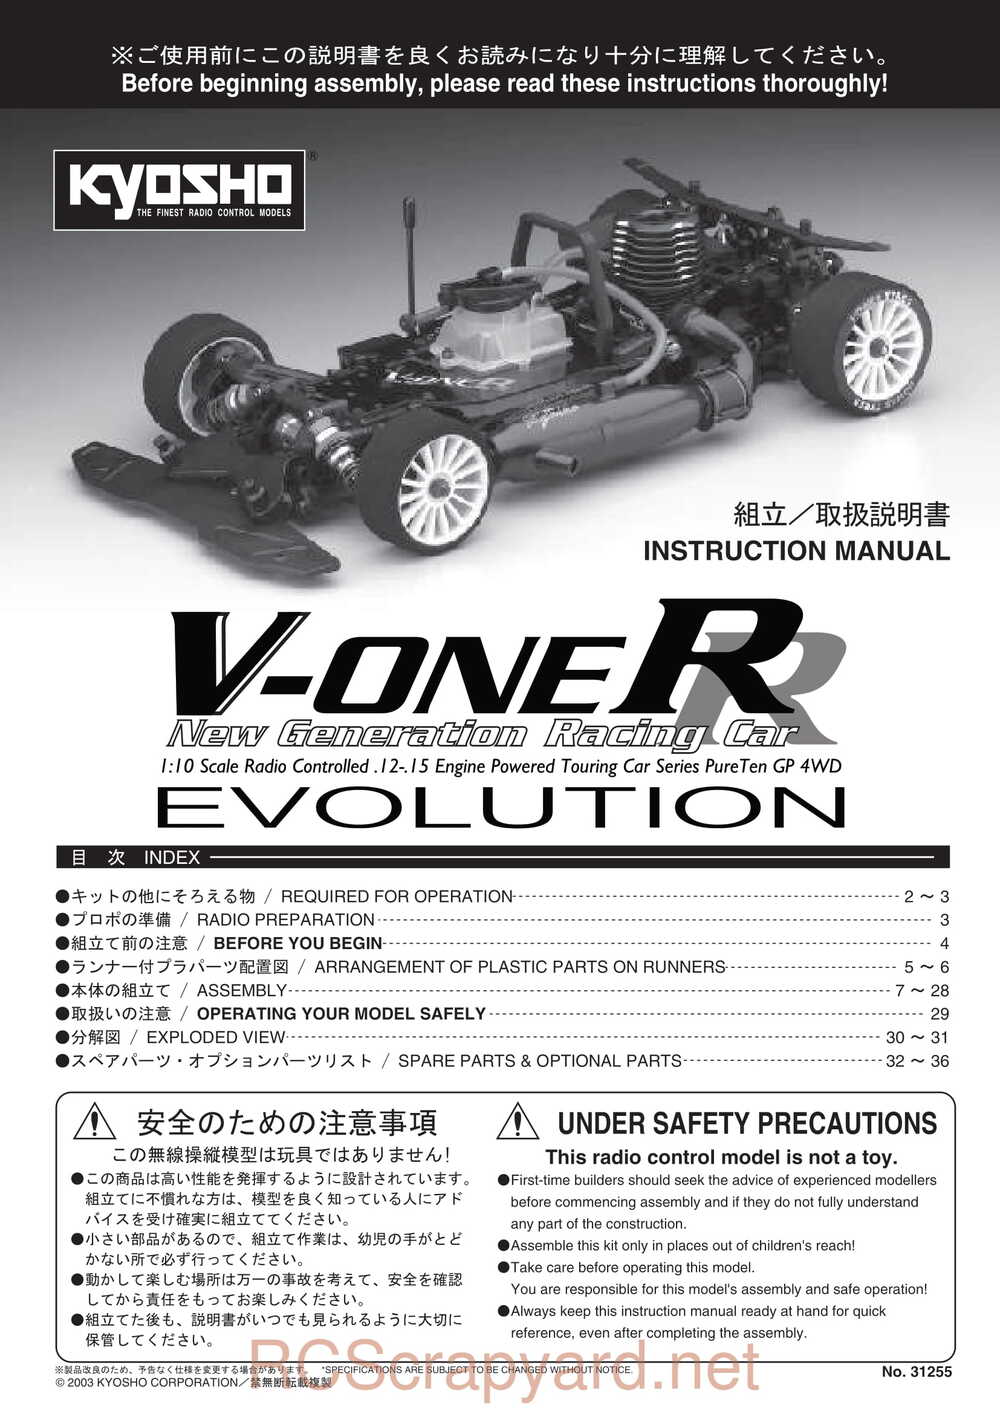 Kyosho - 31255 - V-One RR Evolution - Manual - Page 01